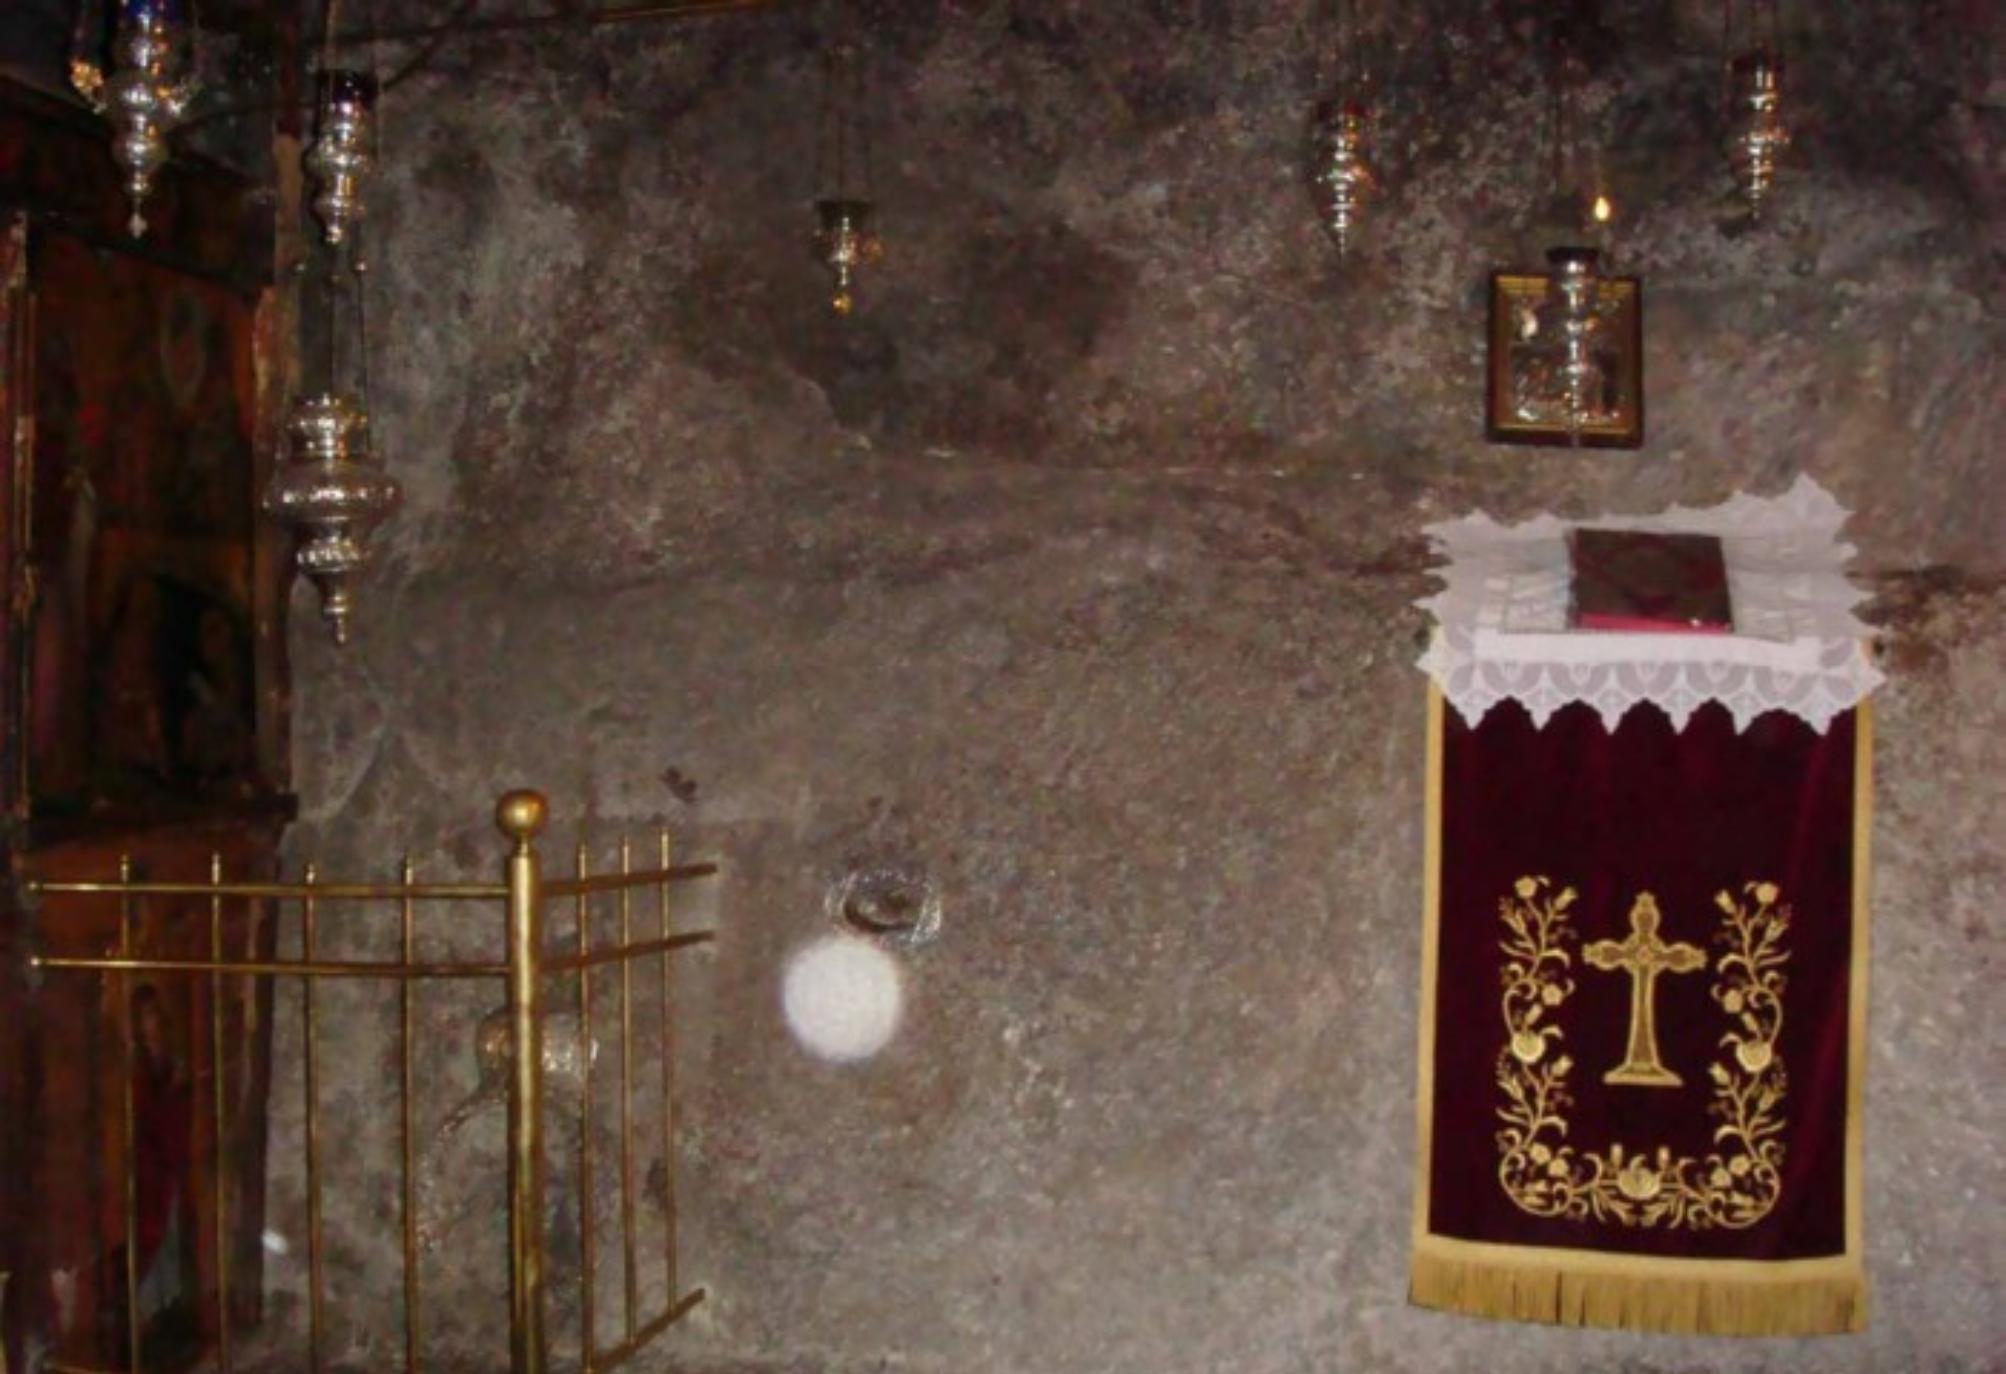 Το Σπήλαιο της Αποκάλυψης στην Πάτμο: Ένα μνημείο παγκόσμιας κληρονομιάς αλλά και τόπος γαλήνης και κατάνυξης όπου ο Θεός μίλησε με στον Άγιο Ιωάννη